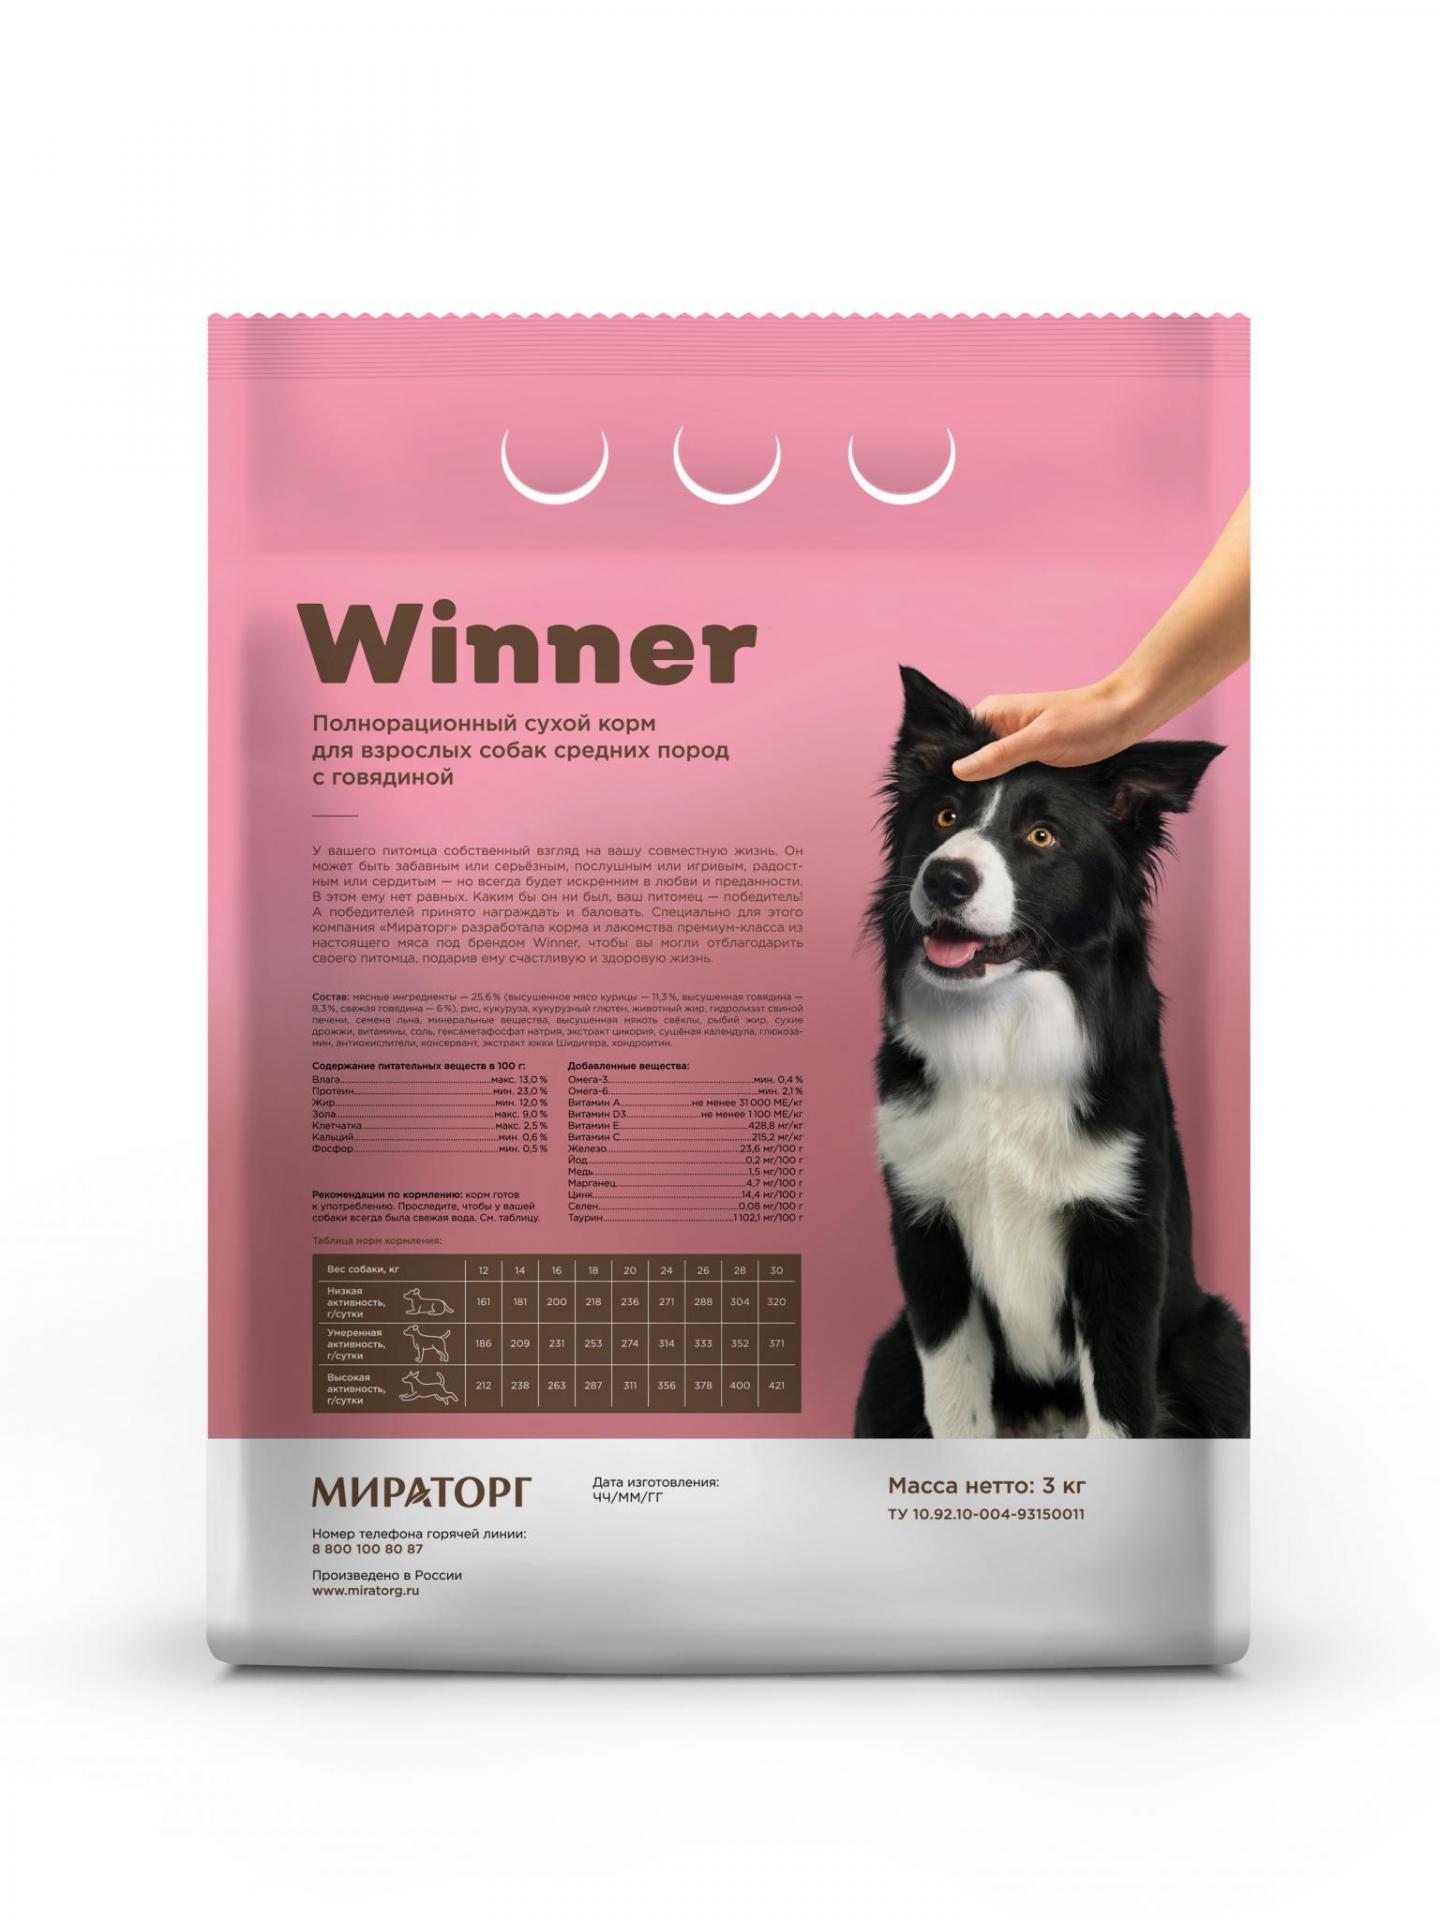 Сухой корм Winner для взрослых собак средних пород, с говядиной, 3 кг